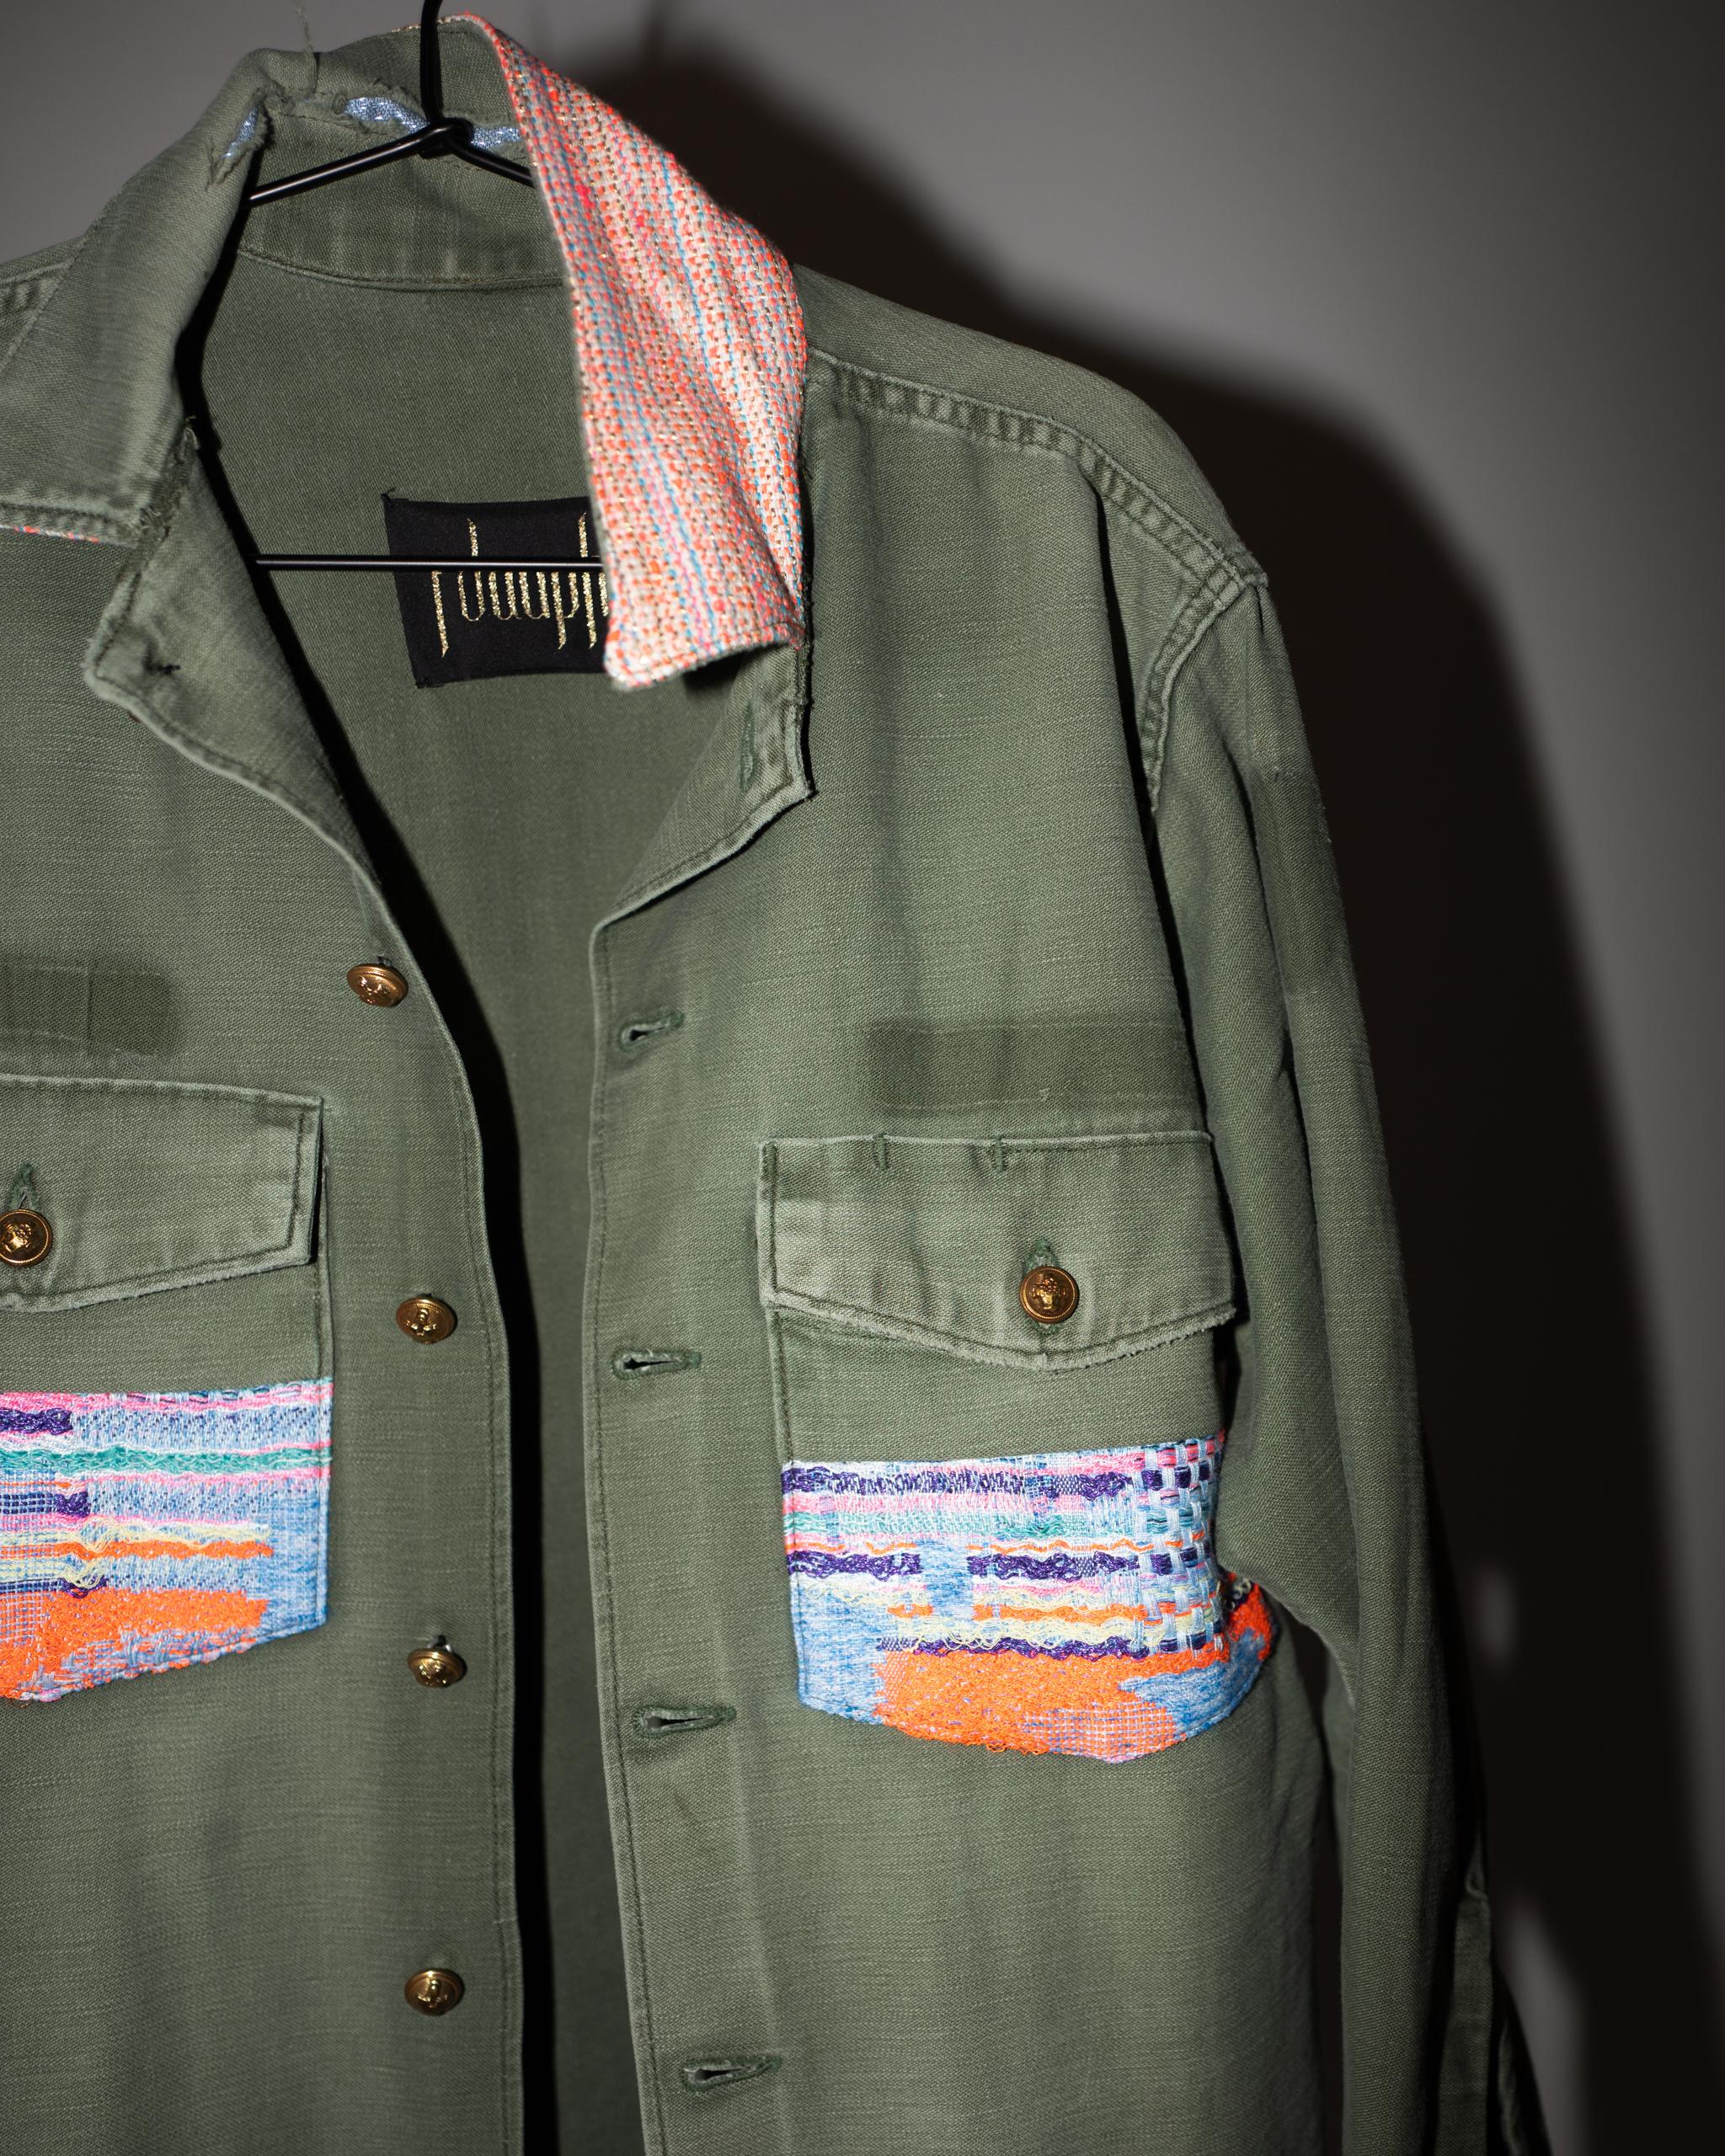 Vintage one of a kind distressed Green Military Jacket mit Neon Pastell Rosa Hellblau Orange Taschen und Kragen,  Militärische vergoldete Messingknöpfe aus Paris
Designer: J DAUPHIN
Größe: Mittel
Nachhaltiger Luxus, Up-cycled und wiederverwendeter